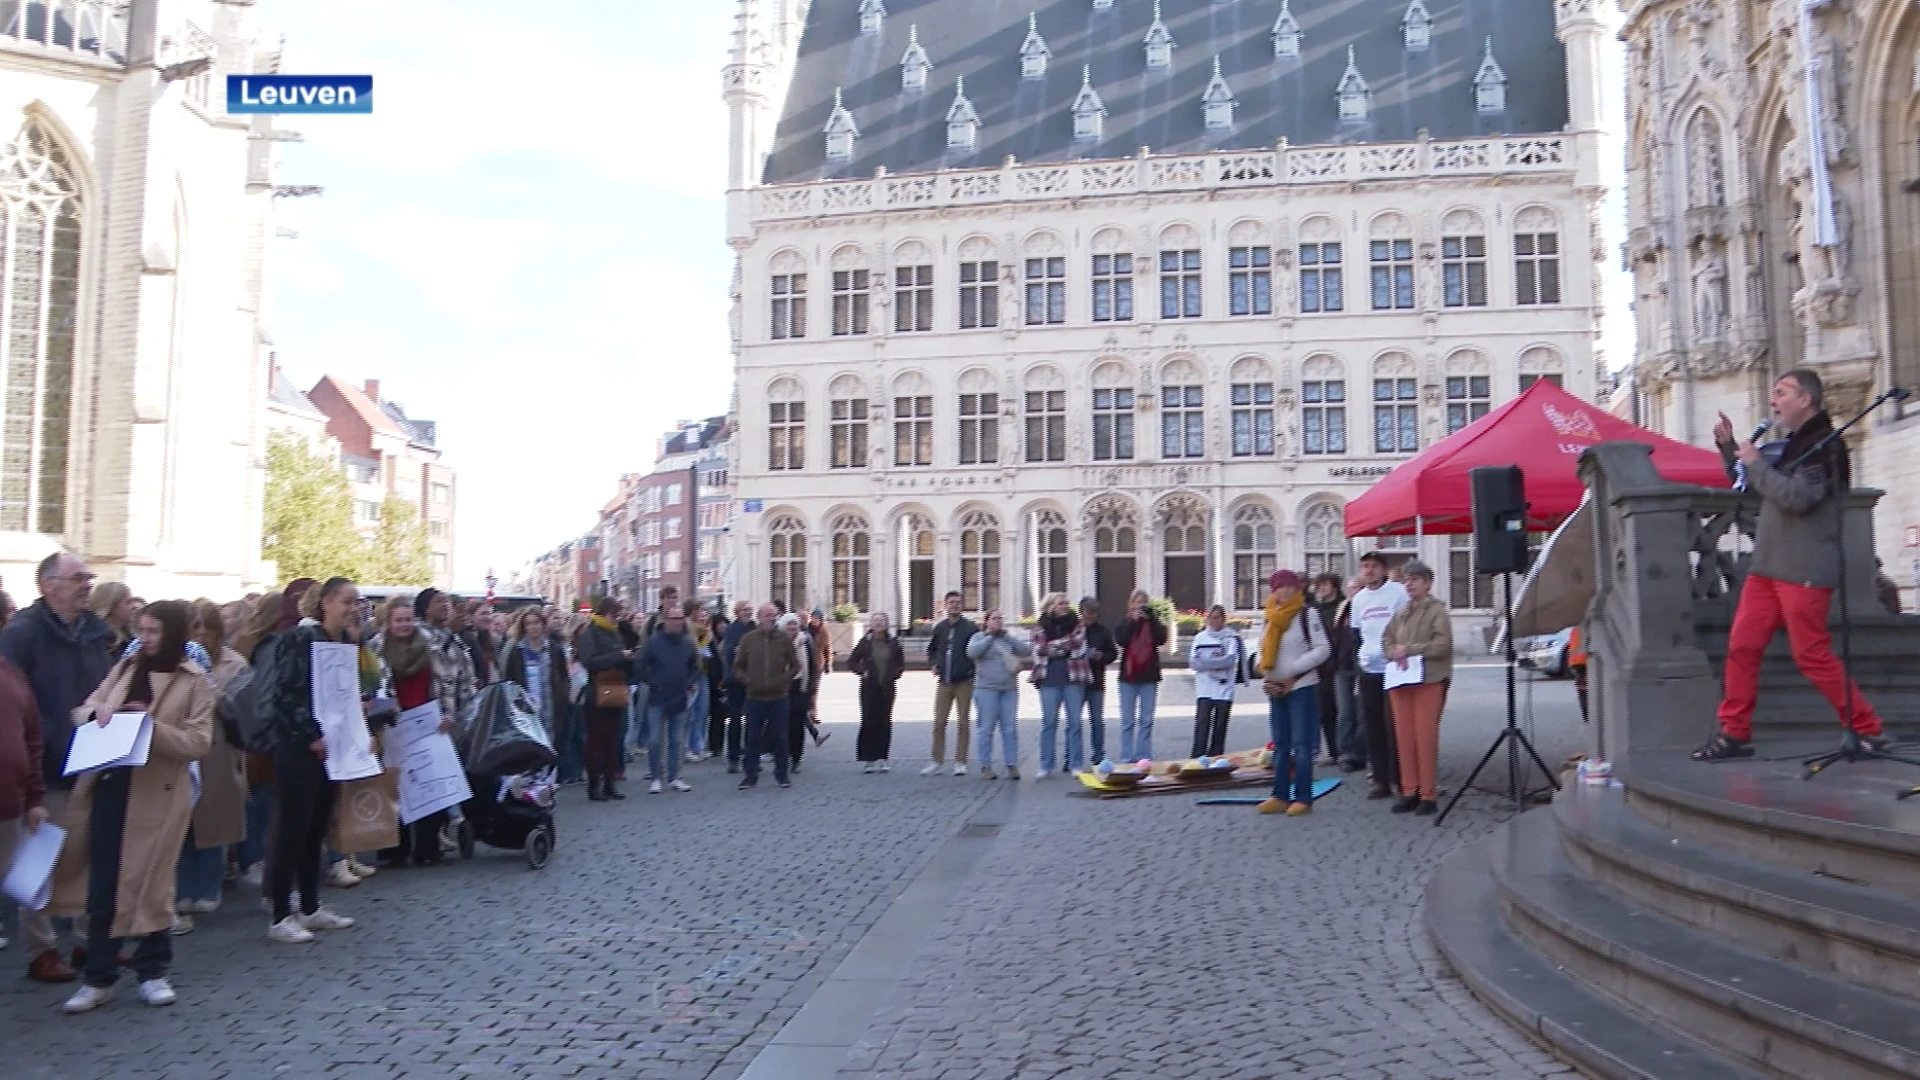 't is vandaag de dag tegen armoede: "Ook in Leuven is er nog veel armoede"